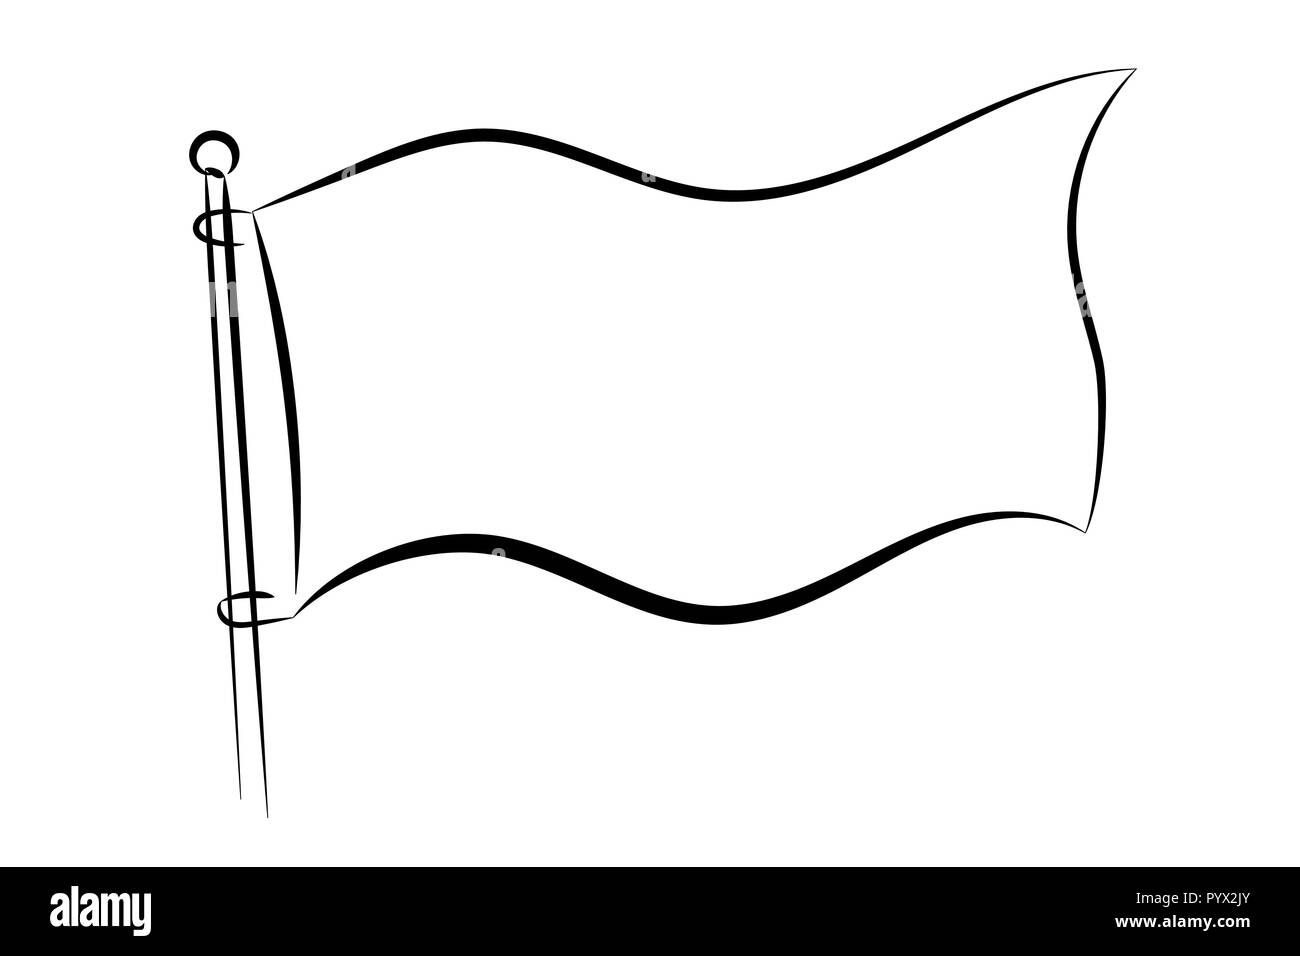 Vector Flag Illustration Monochrome Illustration Of Waving Flag Stock